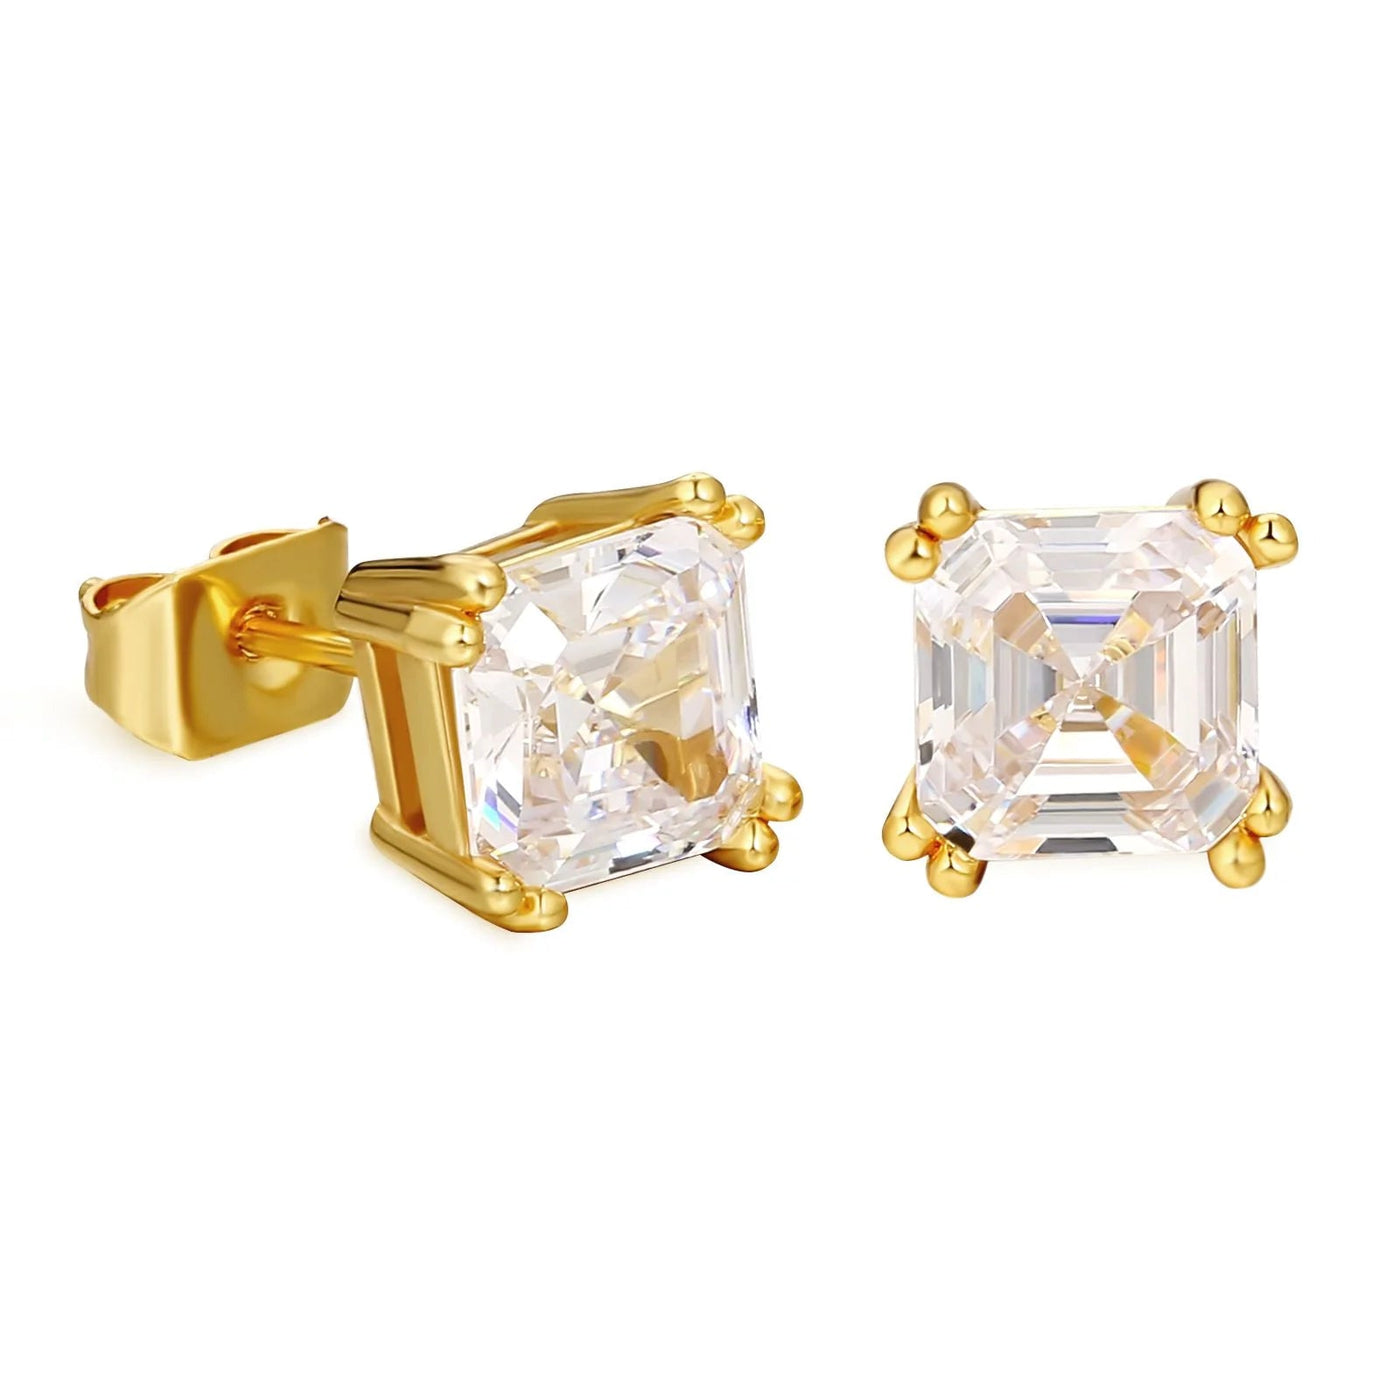 Brilliant Asscher Cut Diamond Stud Earrings Earrings 14K Gold S925 